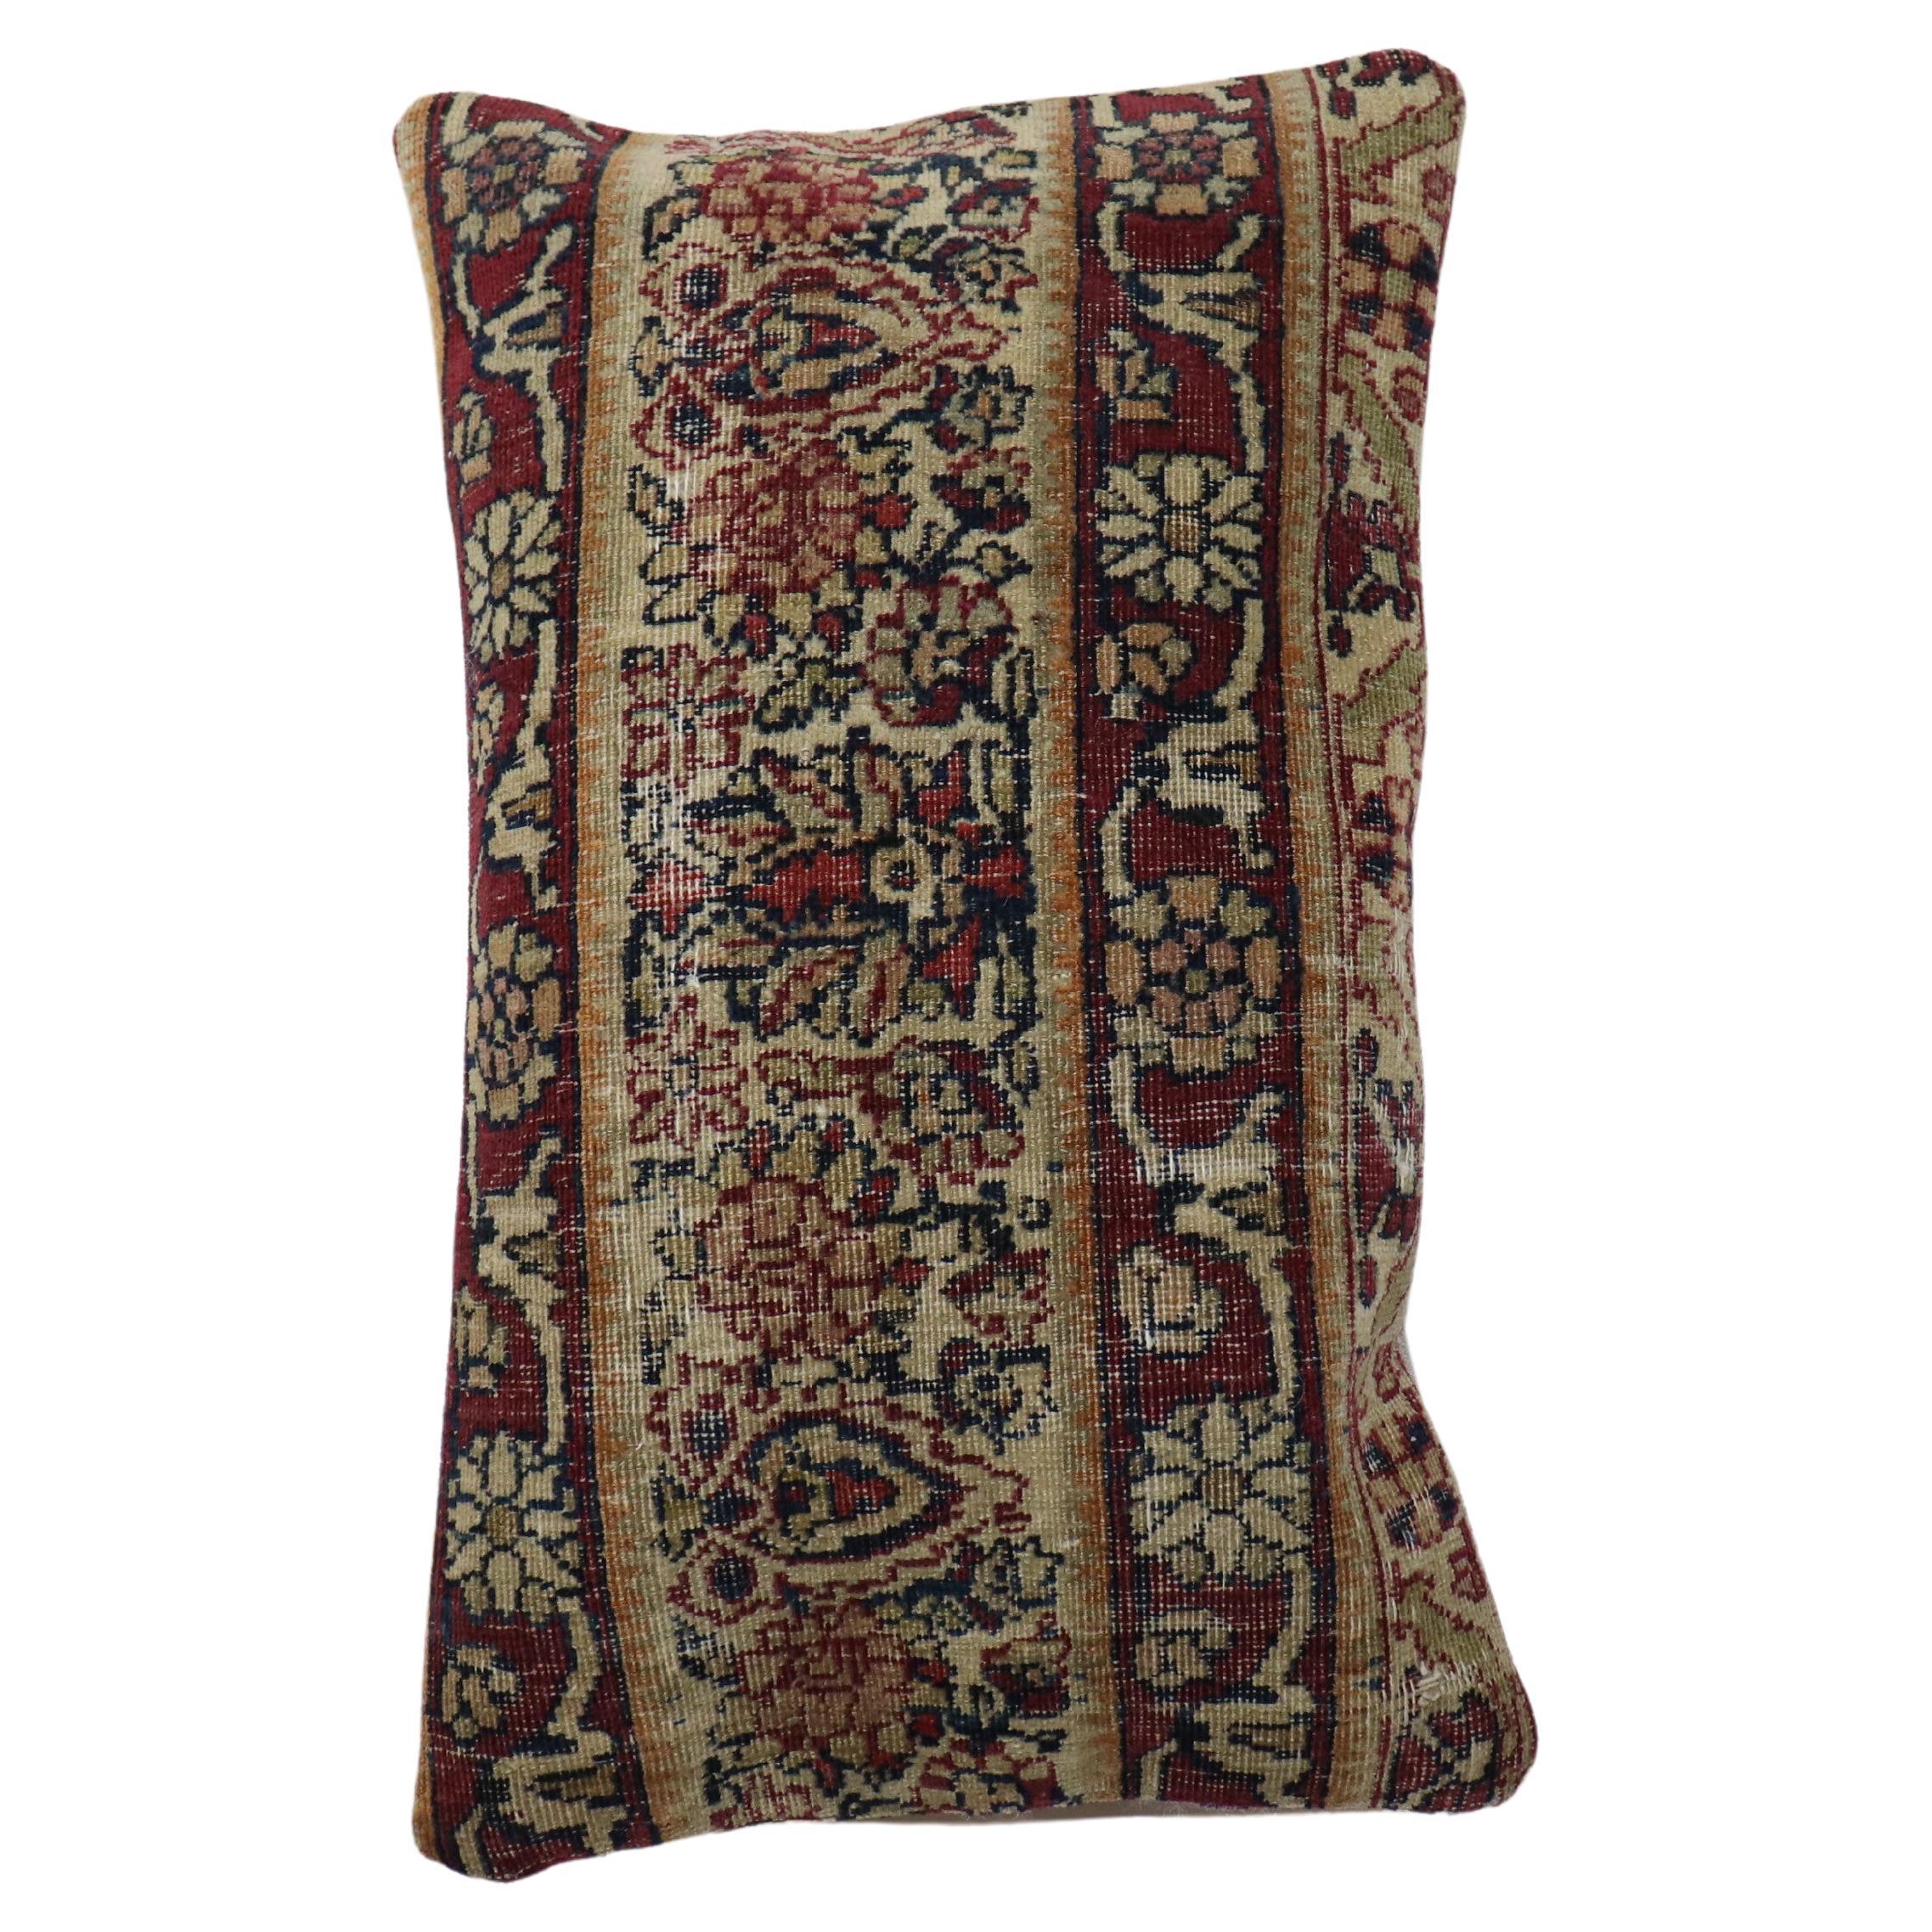 Oreiller de la taille d'un traversin fabriqué à partir d'un tapis persan Kerman du XIXe siècle. Insert de remplissage et fermeture à glissière fournis

Mesures : 12